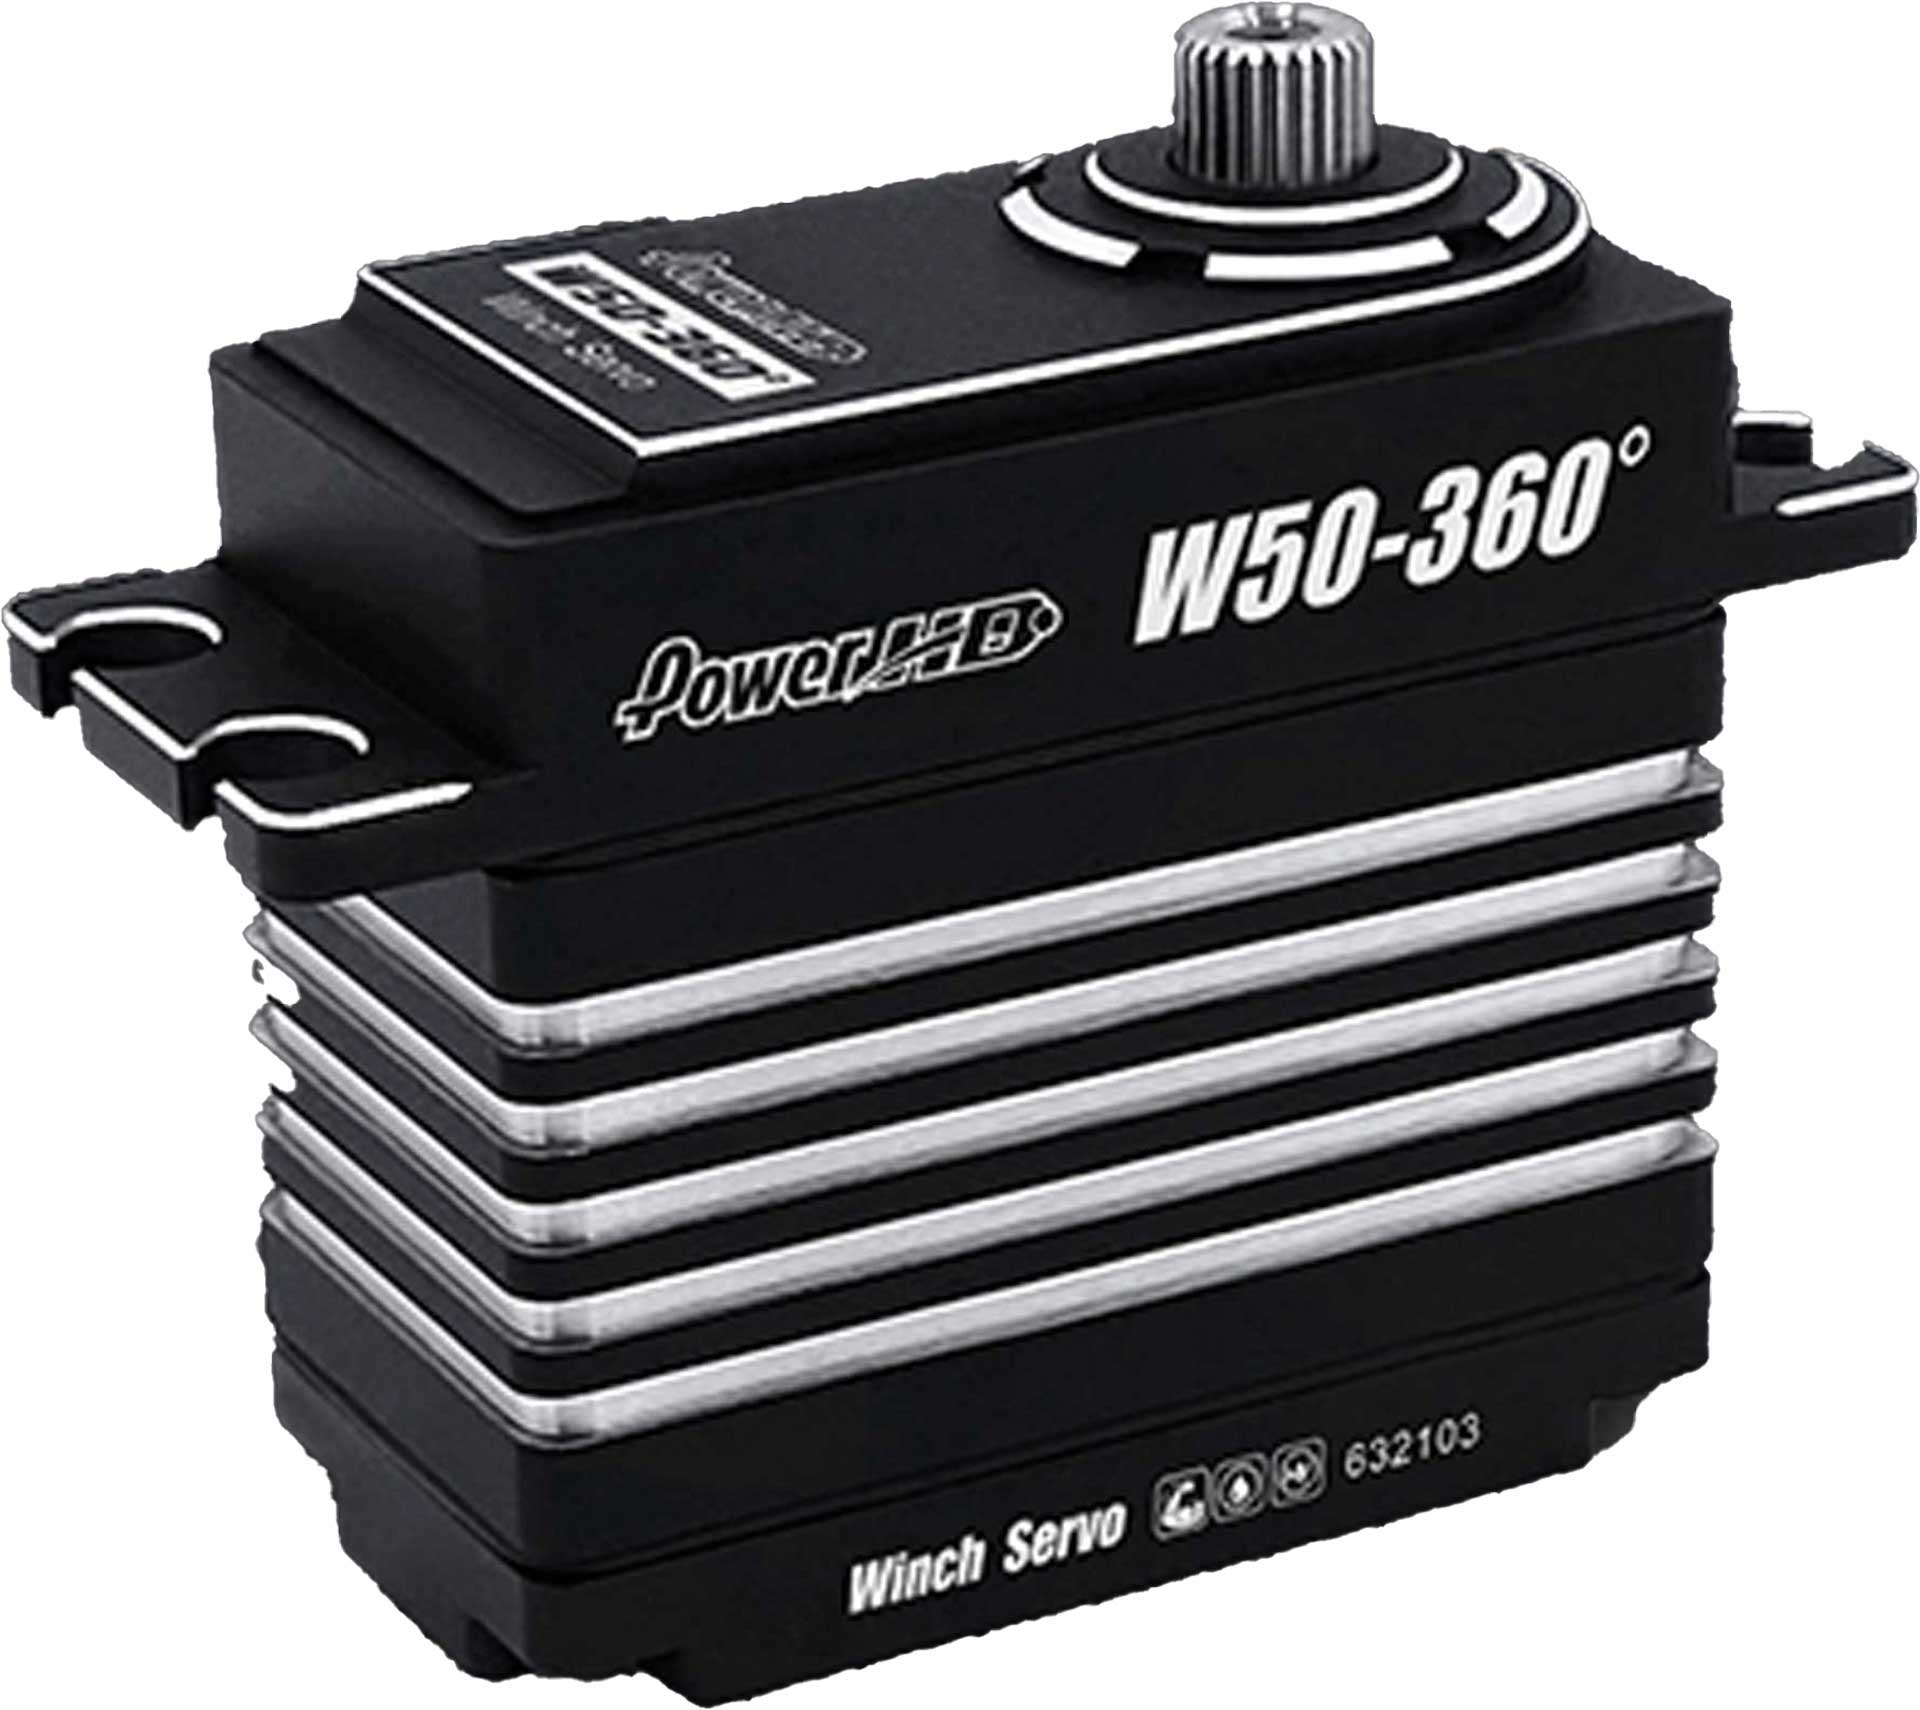 POWER HD W50 360° Windenservo HV für Crawler etc.